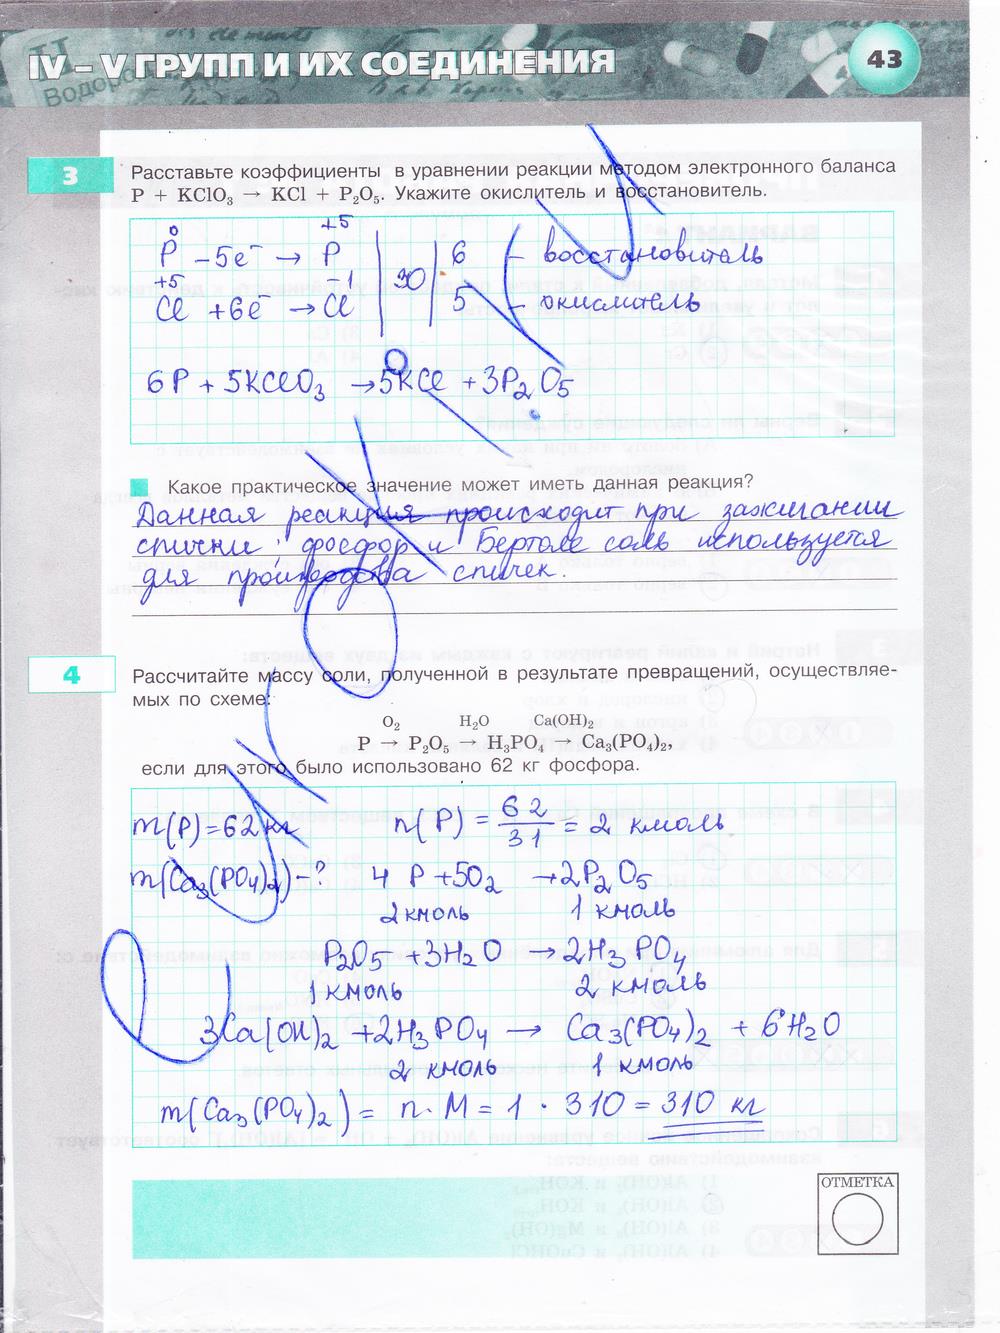 гдз 9 класс тетрадь-экзаменатор страница 43 химия Бобылева, Бирюлина